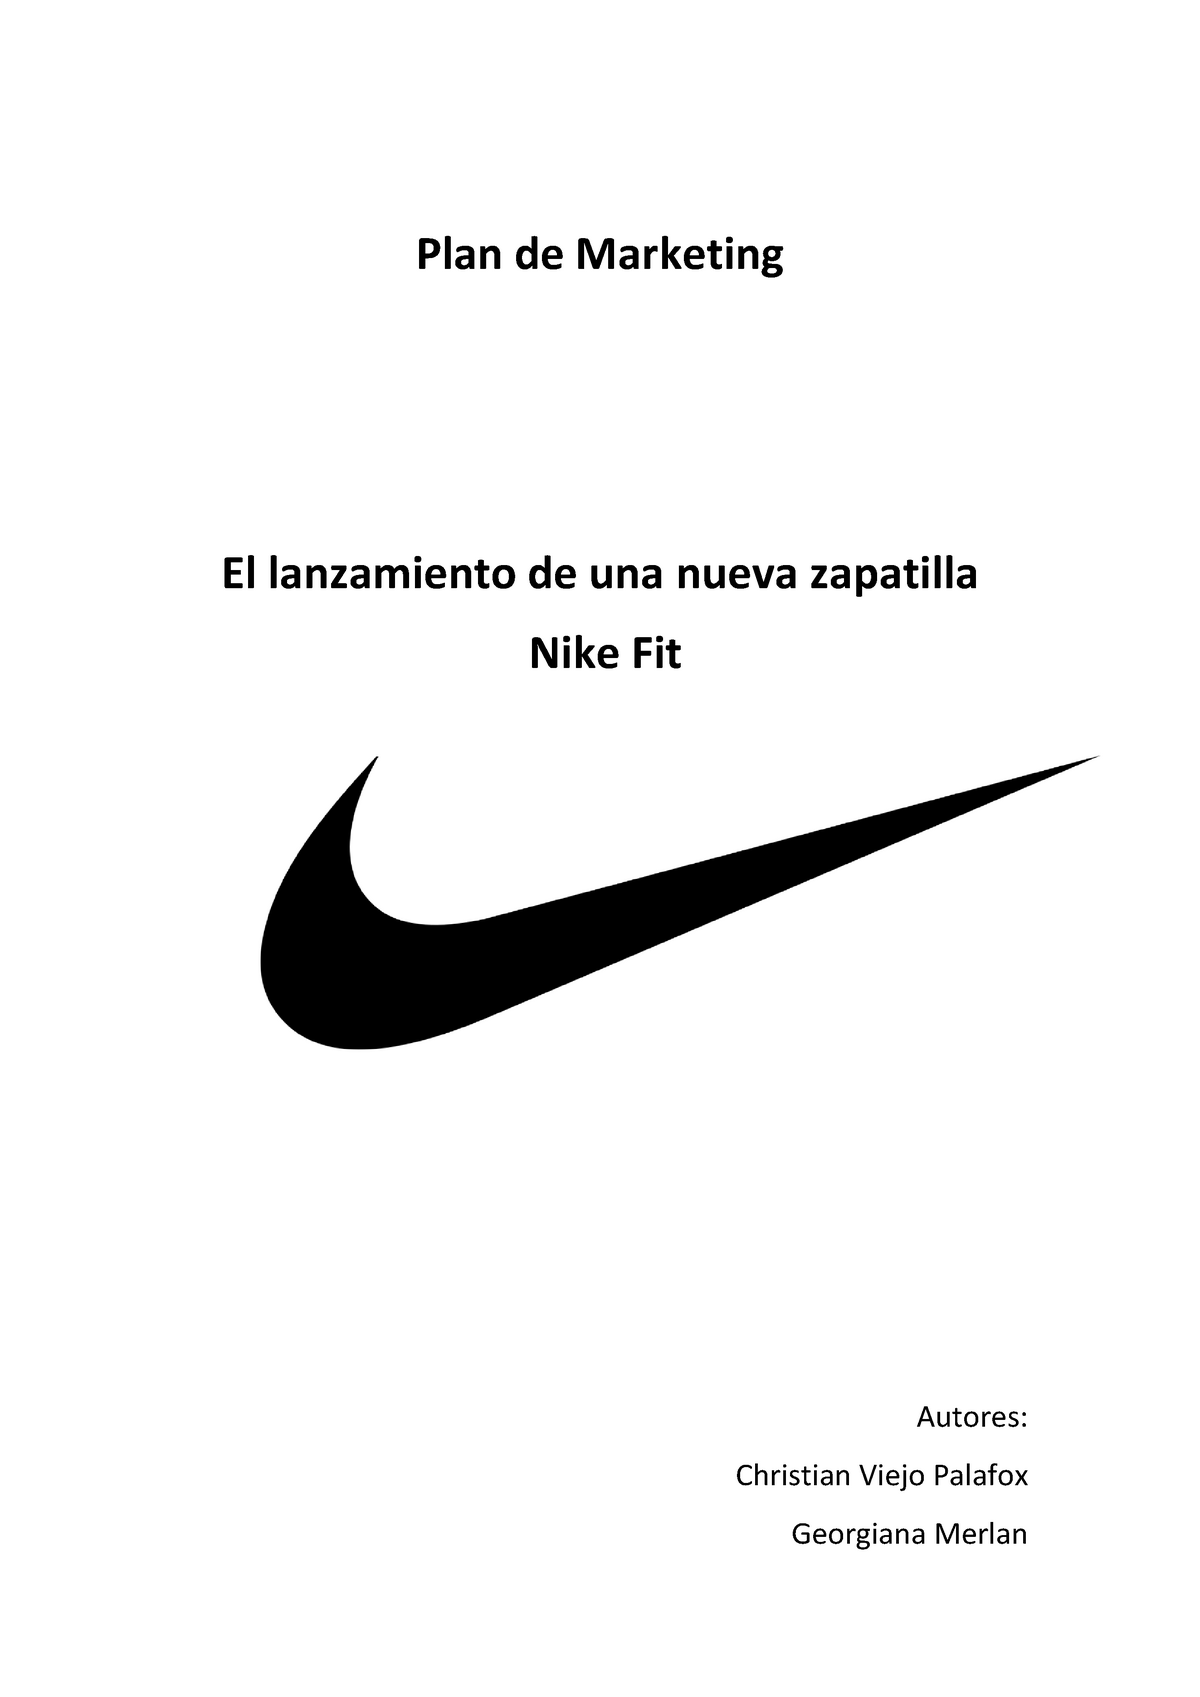 Plan de Nike Fit definitivo - Plan de El lanzamiento de una zapatilla Nike Fit - Studocu